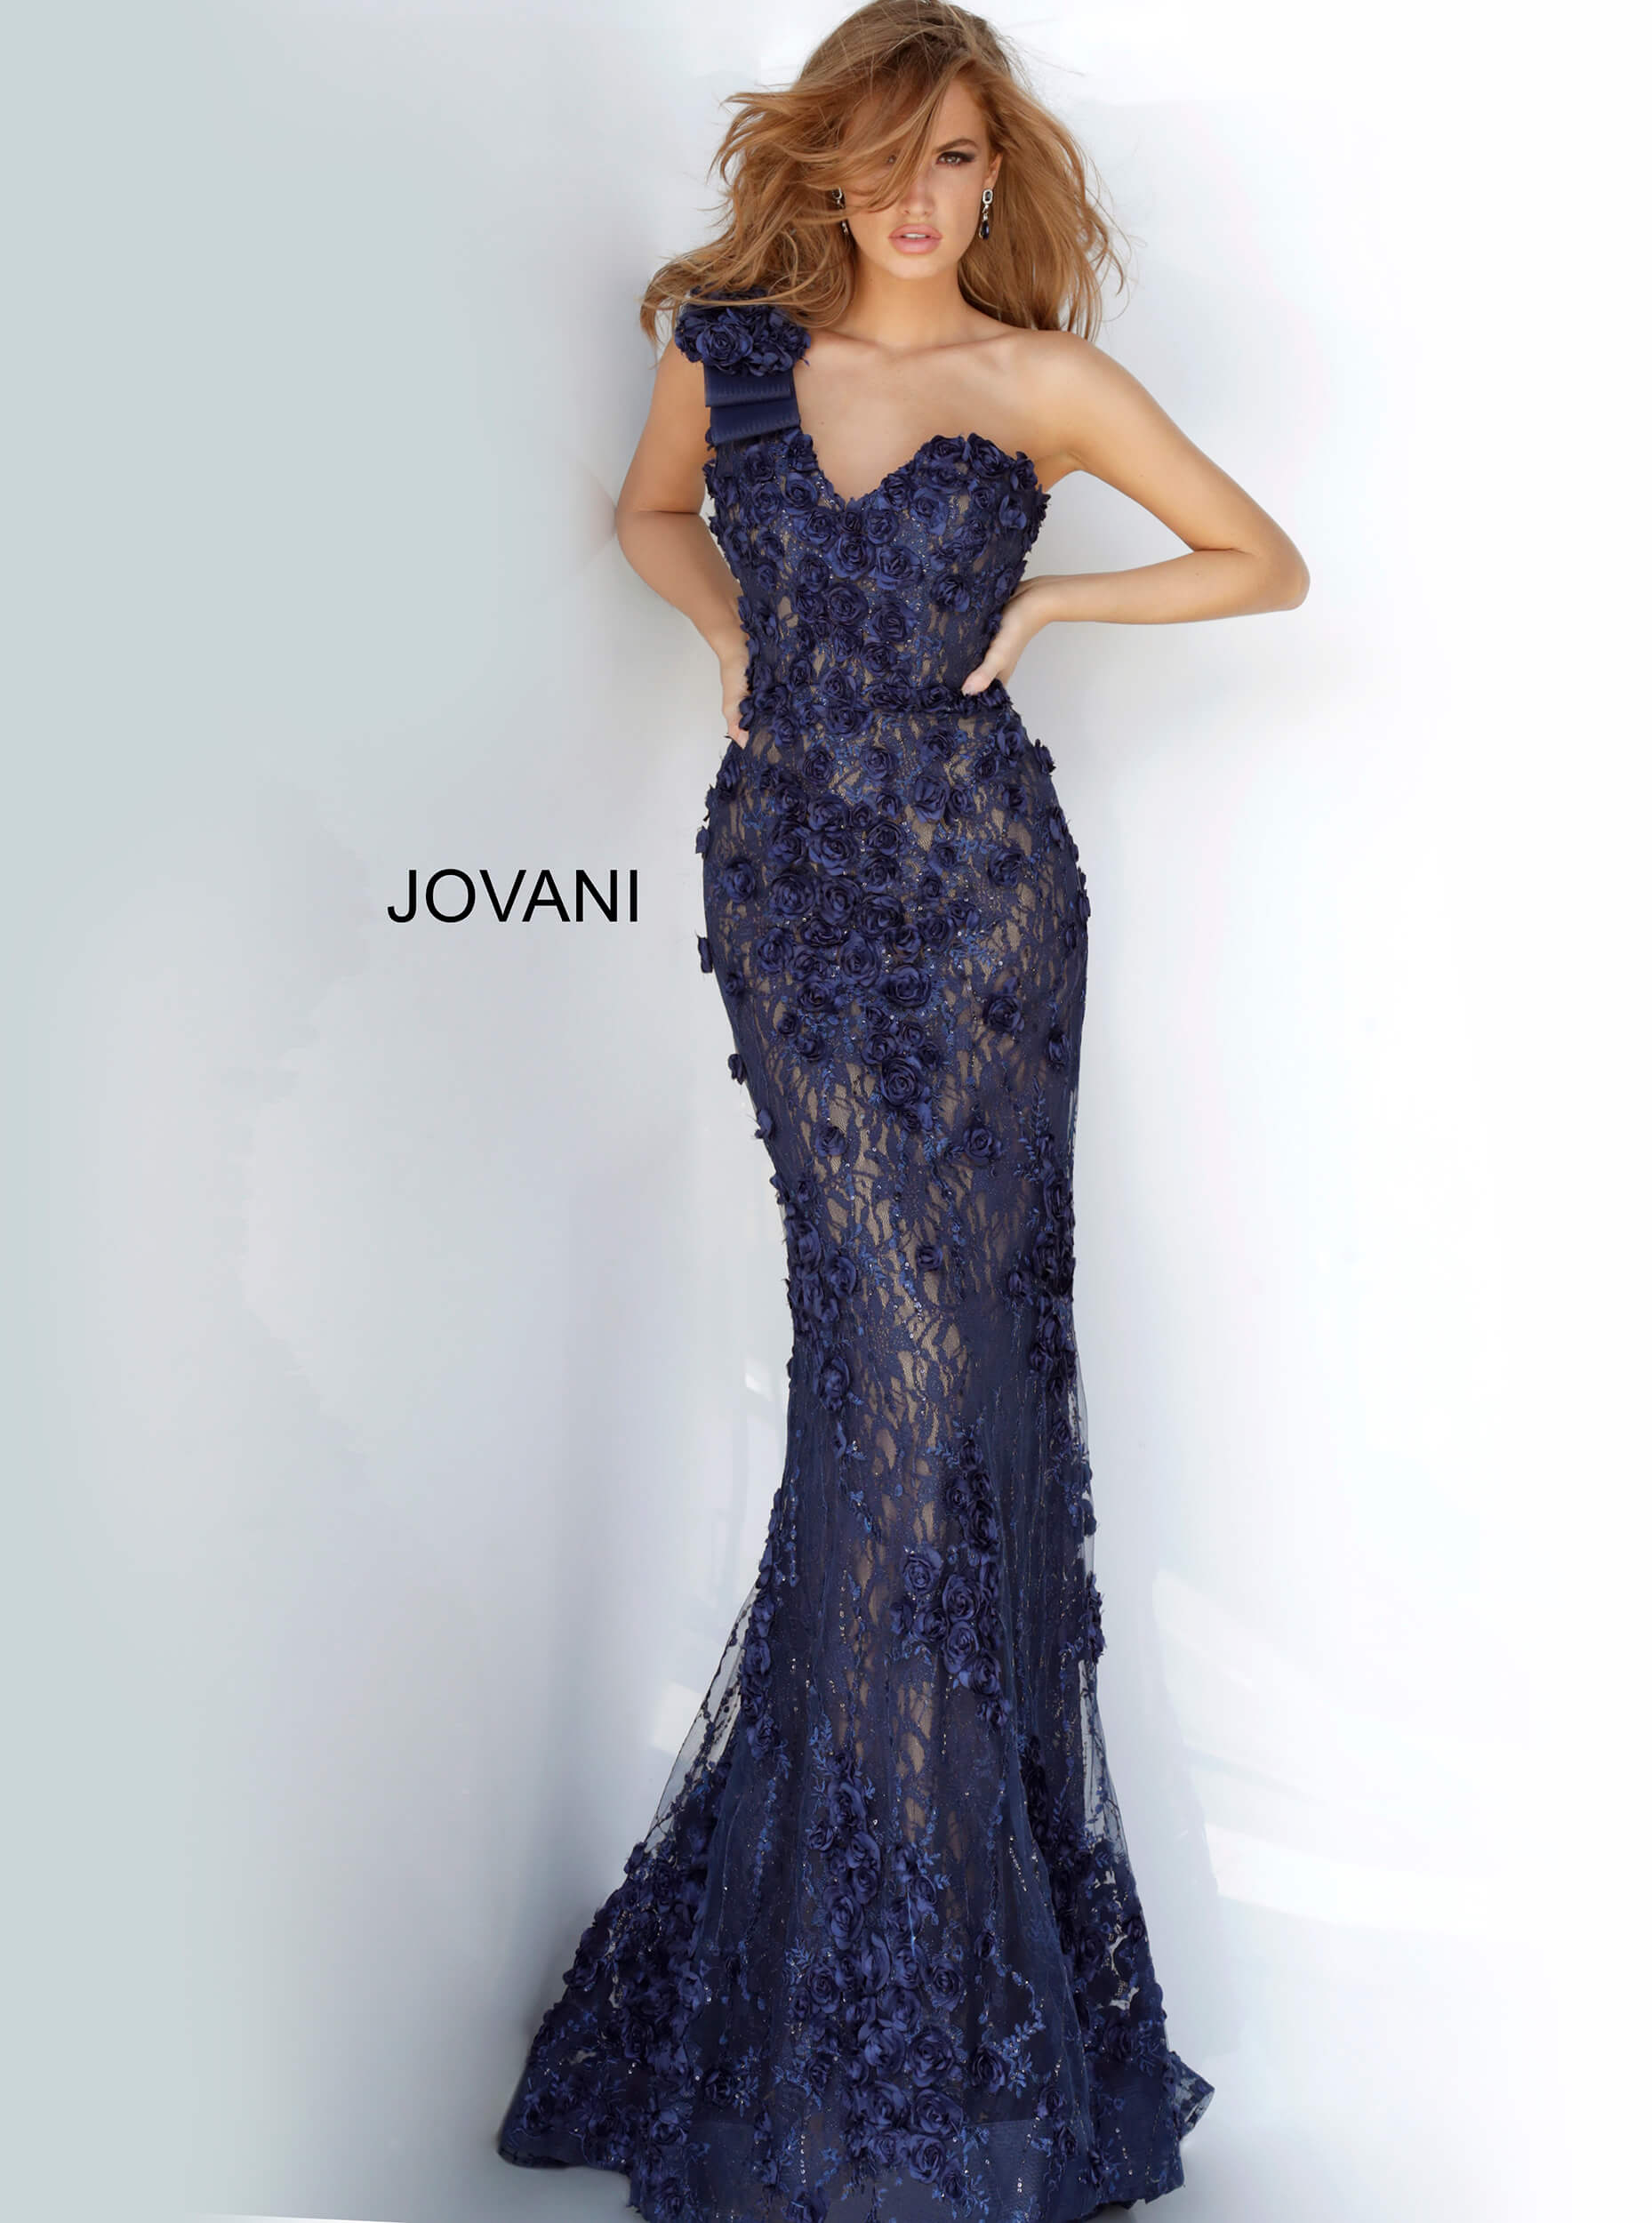 Jovani 3375 Embellished One Shoulder Dress